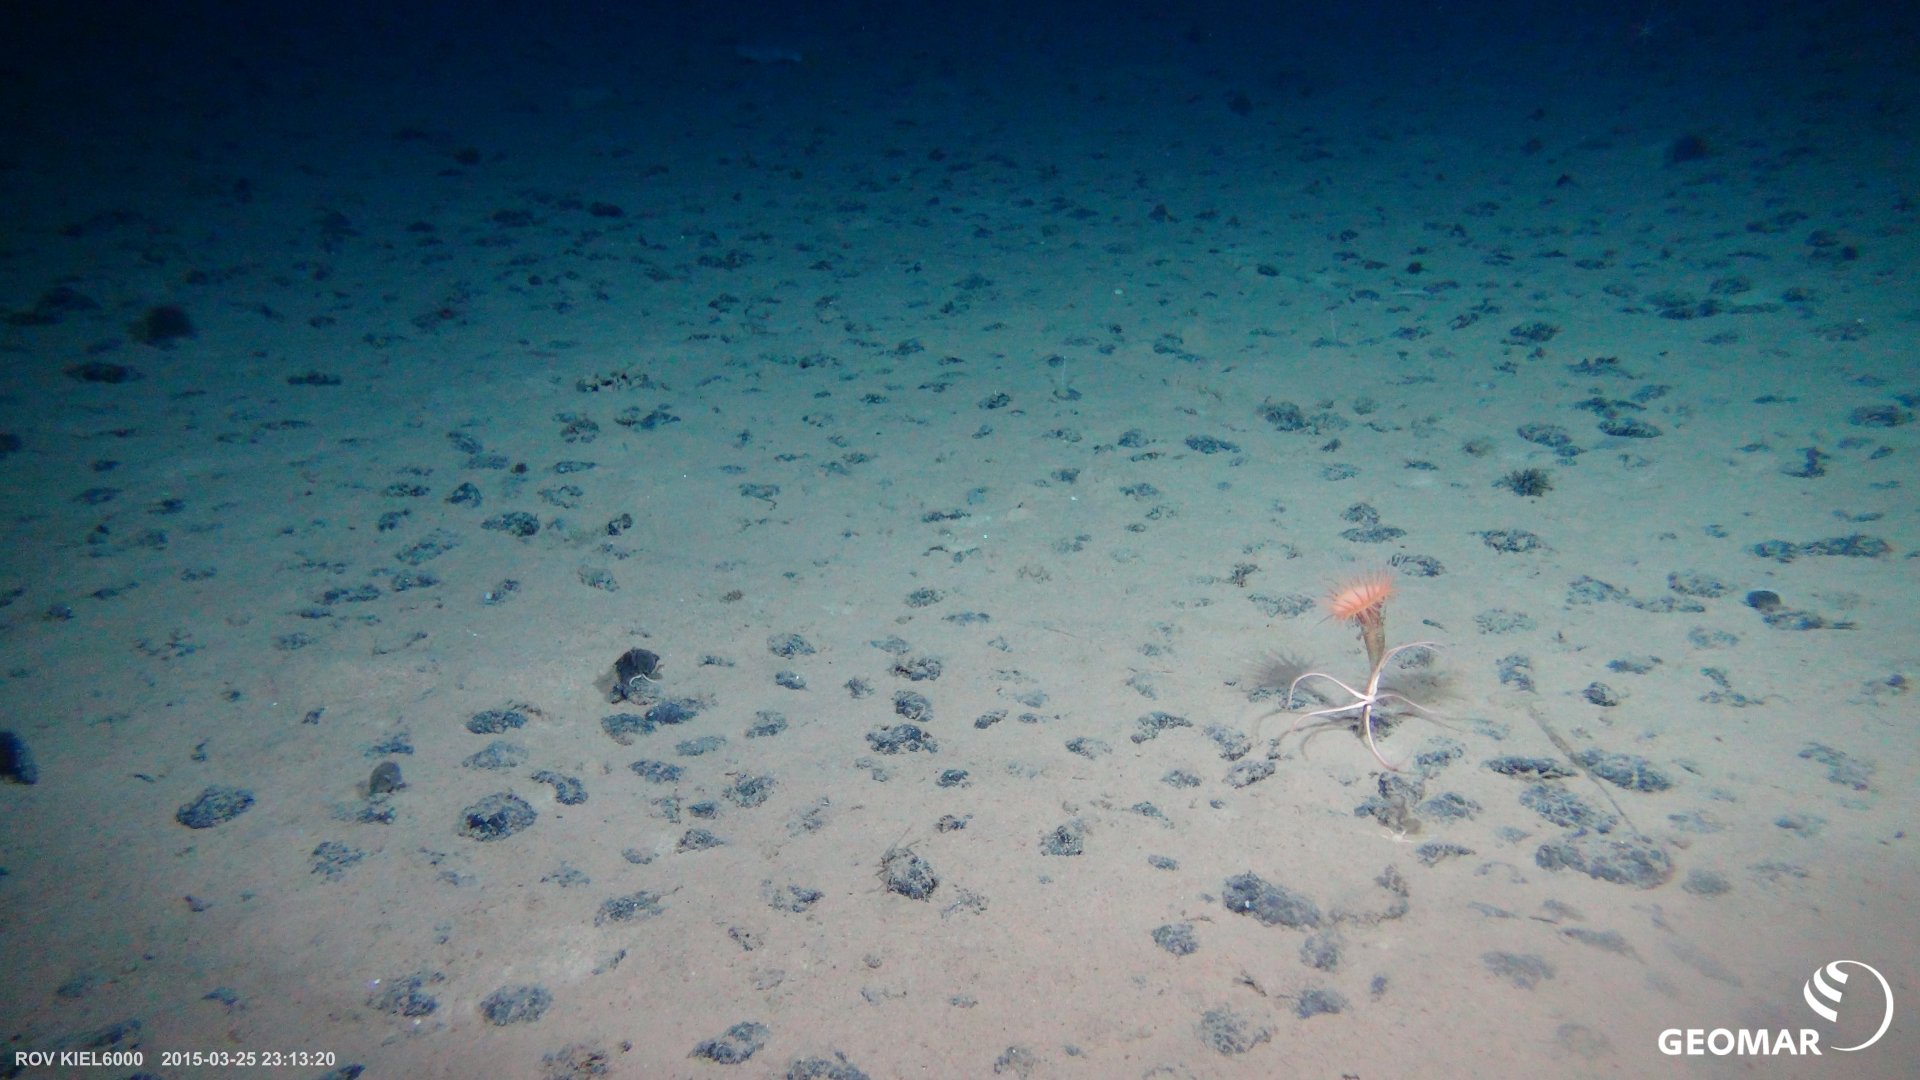 Typisches Manganknollenhabitat auf dem Meeresboden der Clarion-Clipperton Bruchzone (CCZ) im Pazifik (Expedition SO239). (Foto: ROV KIEL6000, GEOMAR)